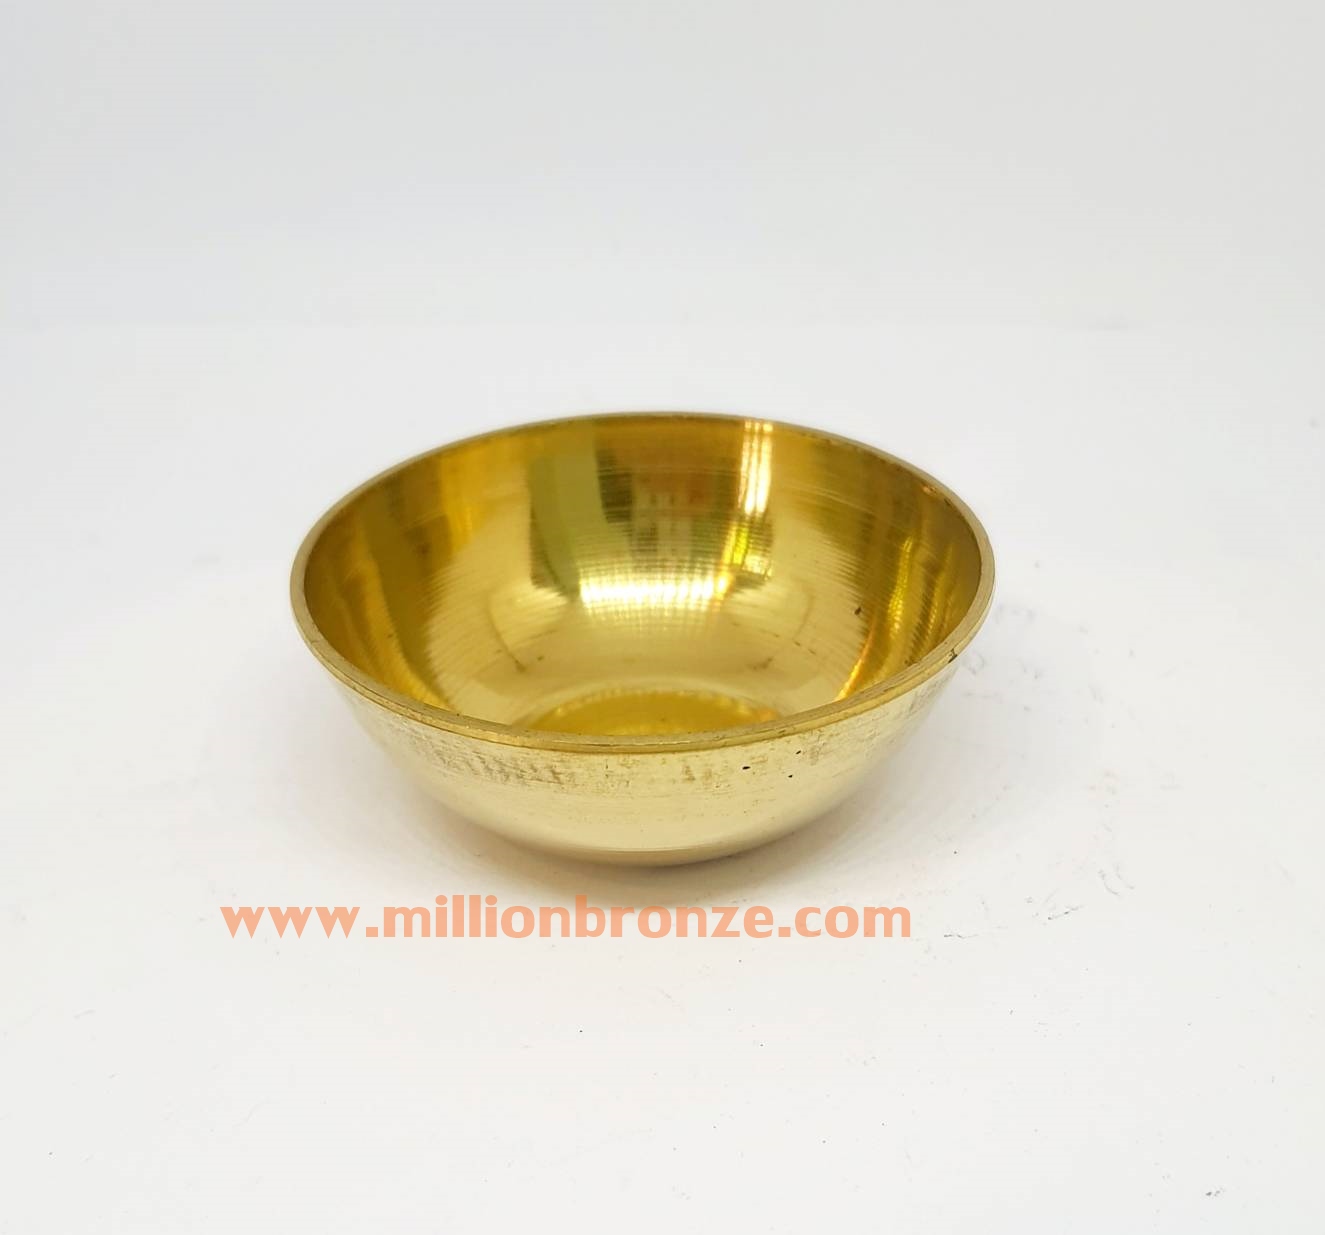 รูปภาพที่1 ของสินค้า : J070 ชามทองเหลืองอินเดียขนาดเล็ก 